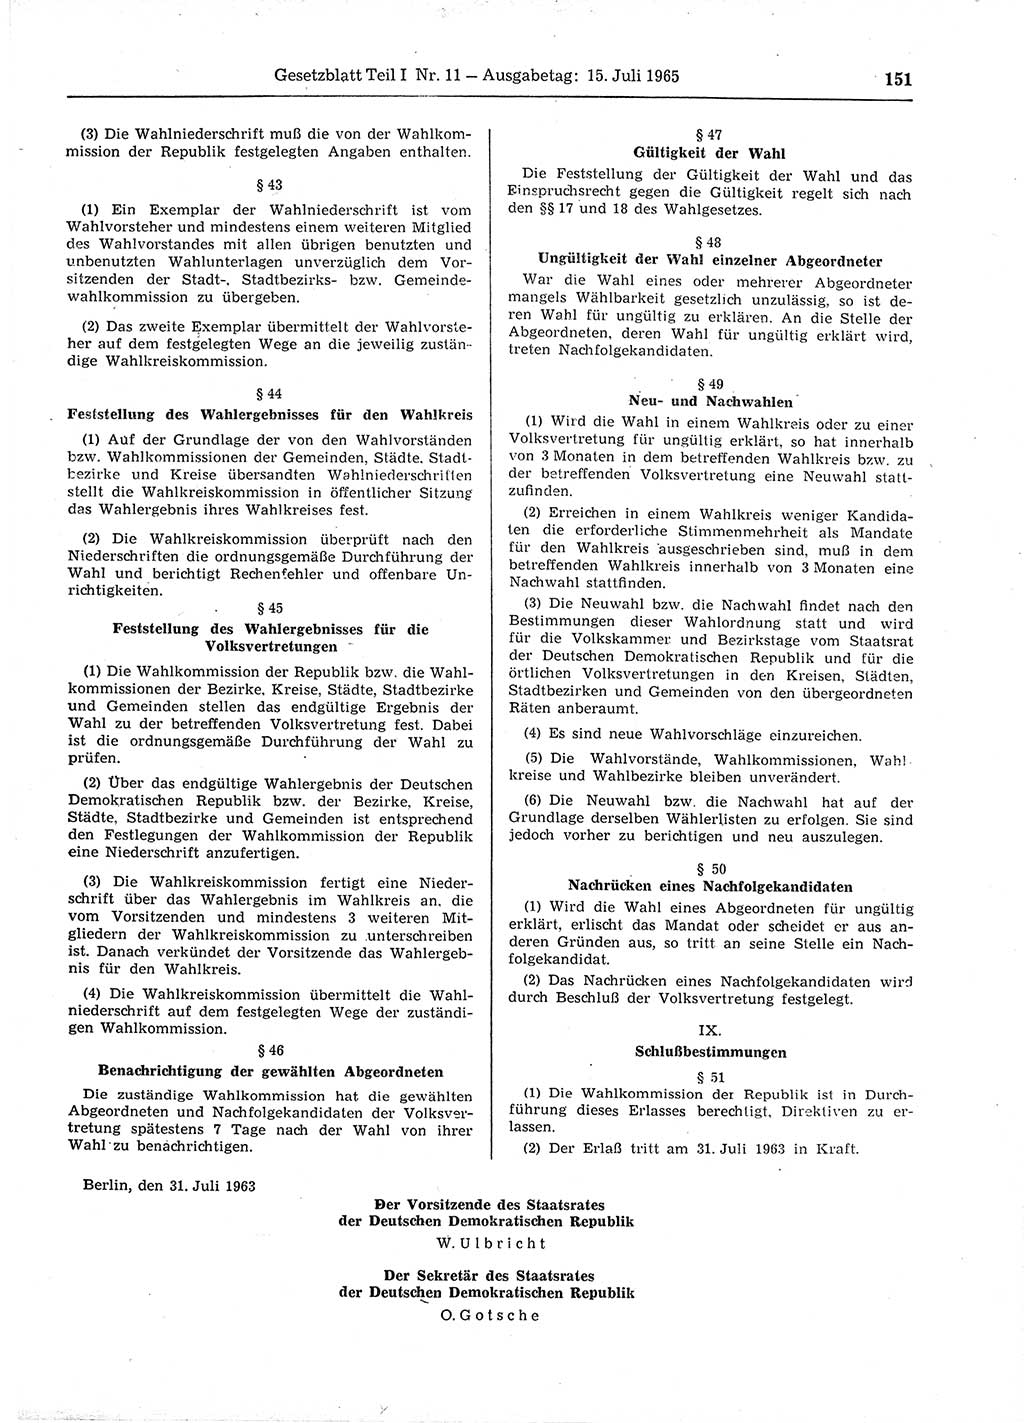 Gesetzblatt (GBl.) der Deutschen Demokratischen Republik (DDR) Teil Ⅰ 1965, Seite 151 (GBl. DDR Ⅰ 1965, S. 151)